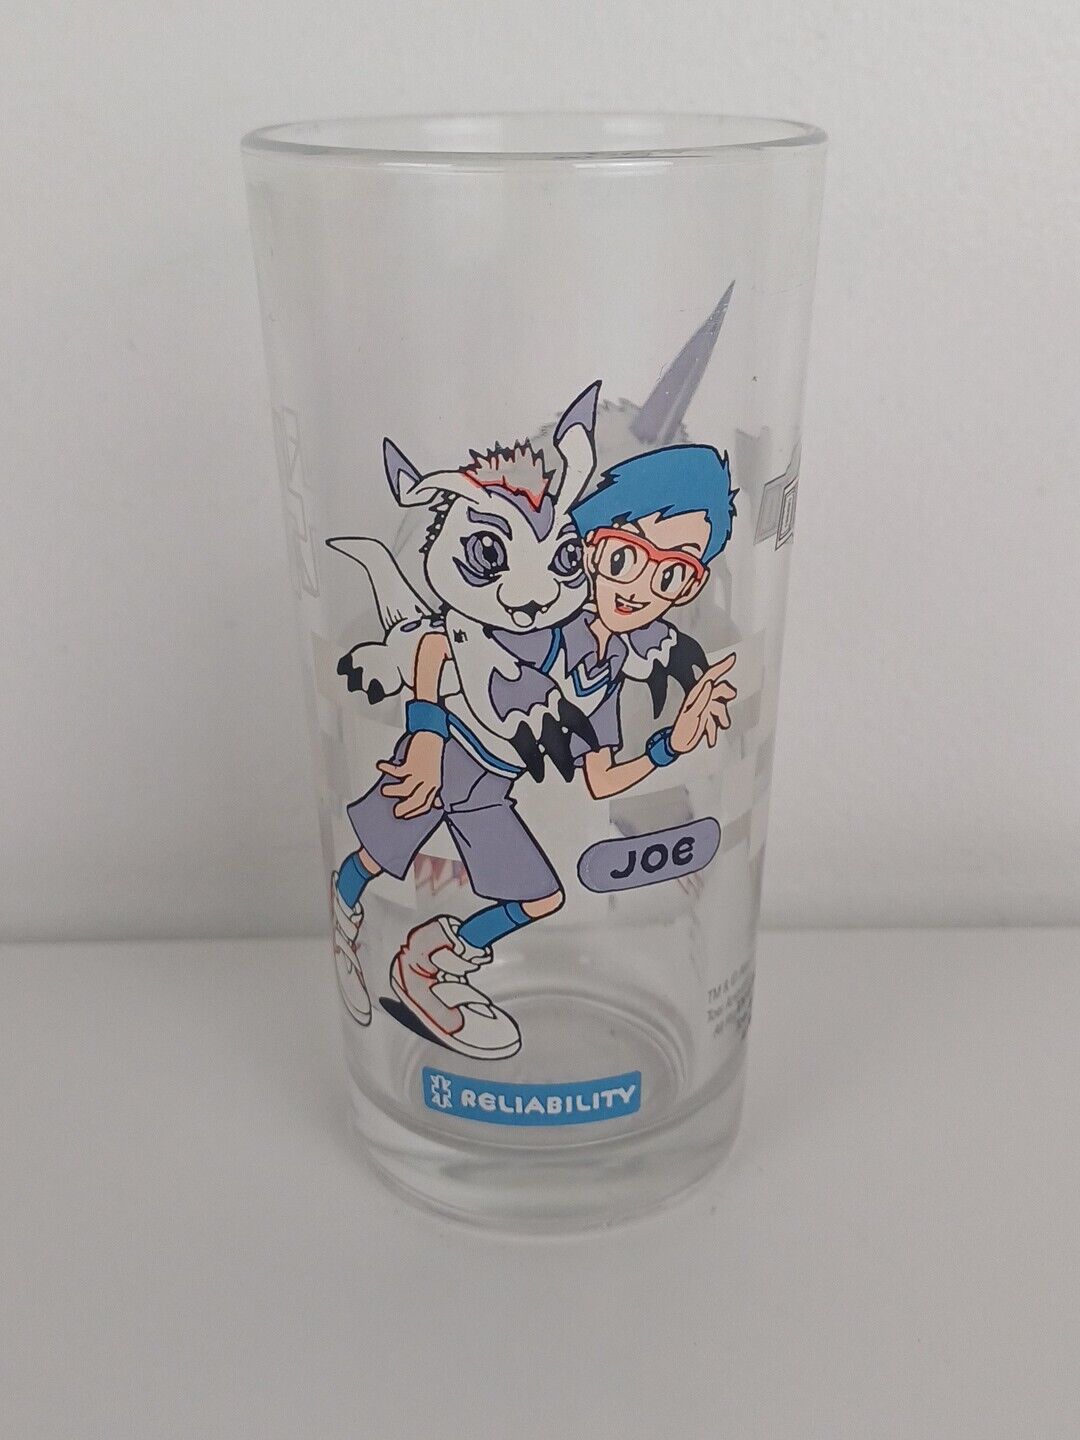 Digimon Akiyoshi Hongo Joe Reliability Collectable Glass